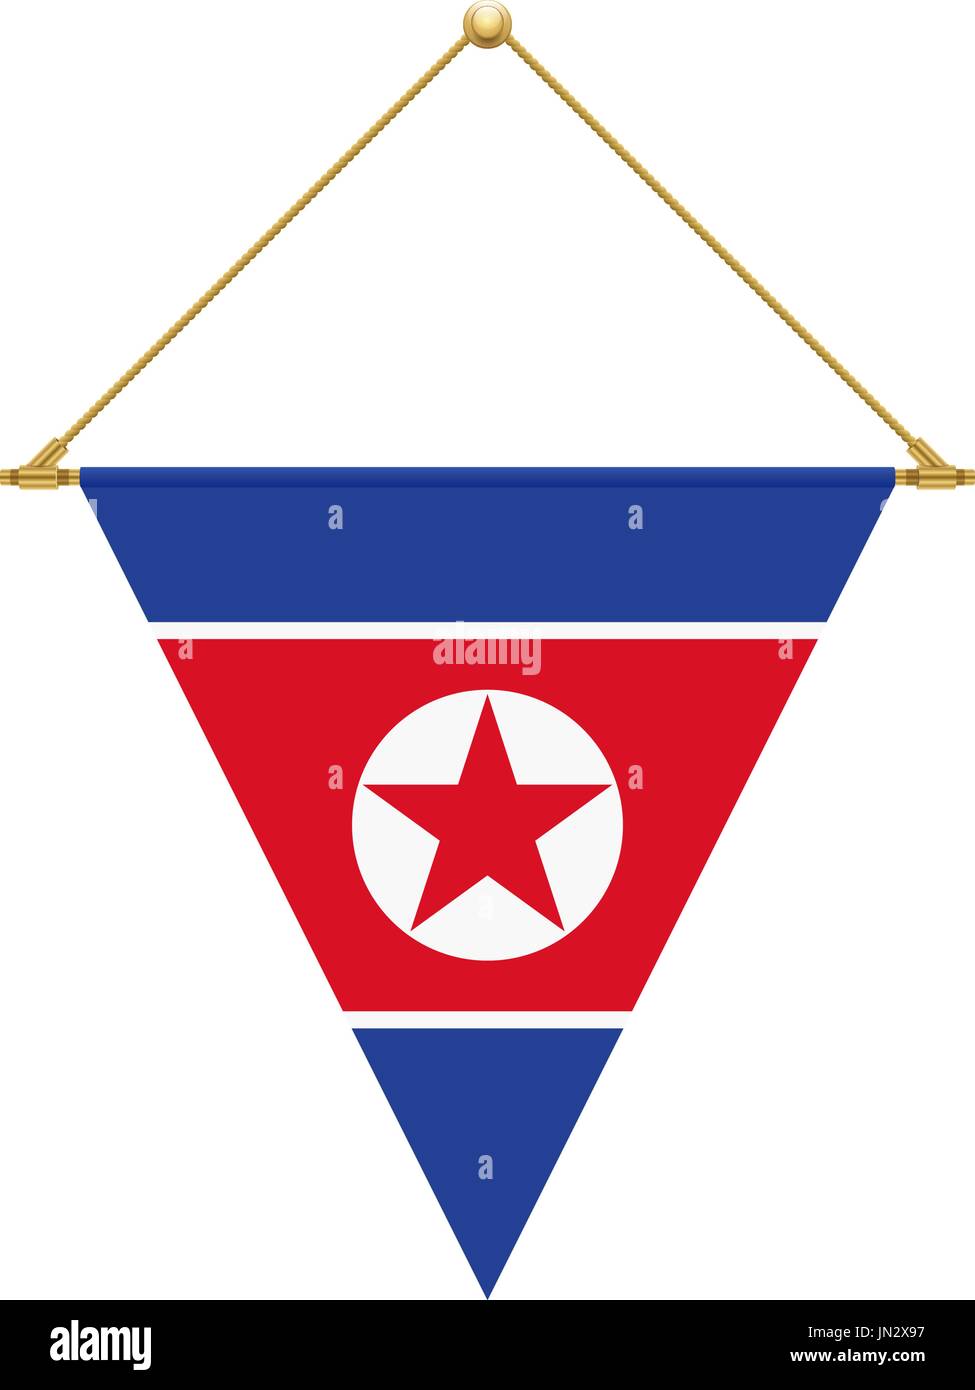 Bandiera di design. Corea del Nord bandiera triangolare appesa. Modello isolato per i tuoi progetti. Illustrazione Vettoriale. Illustrazione Vettoriale